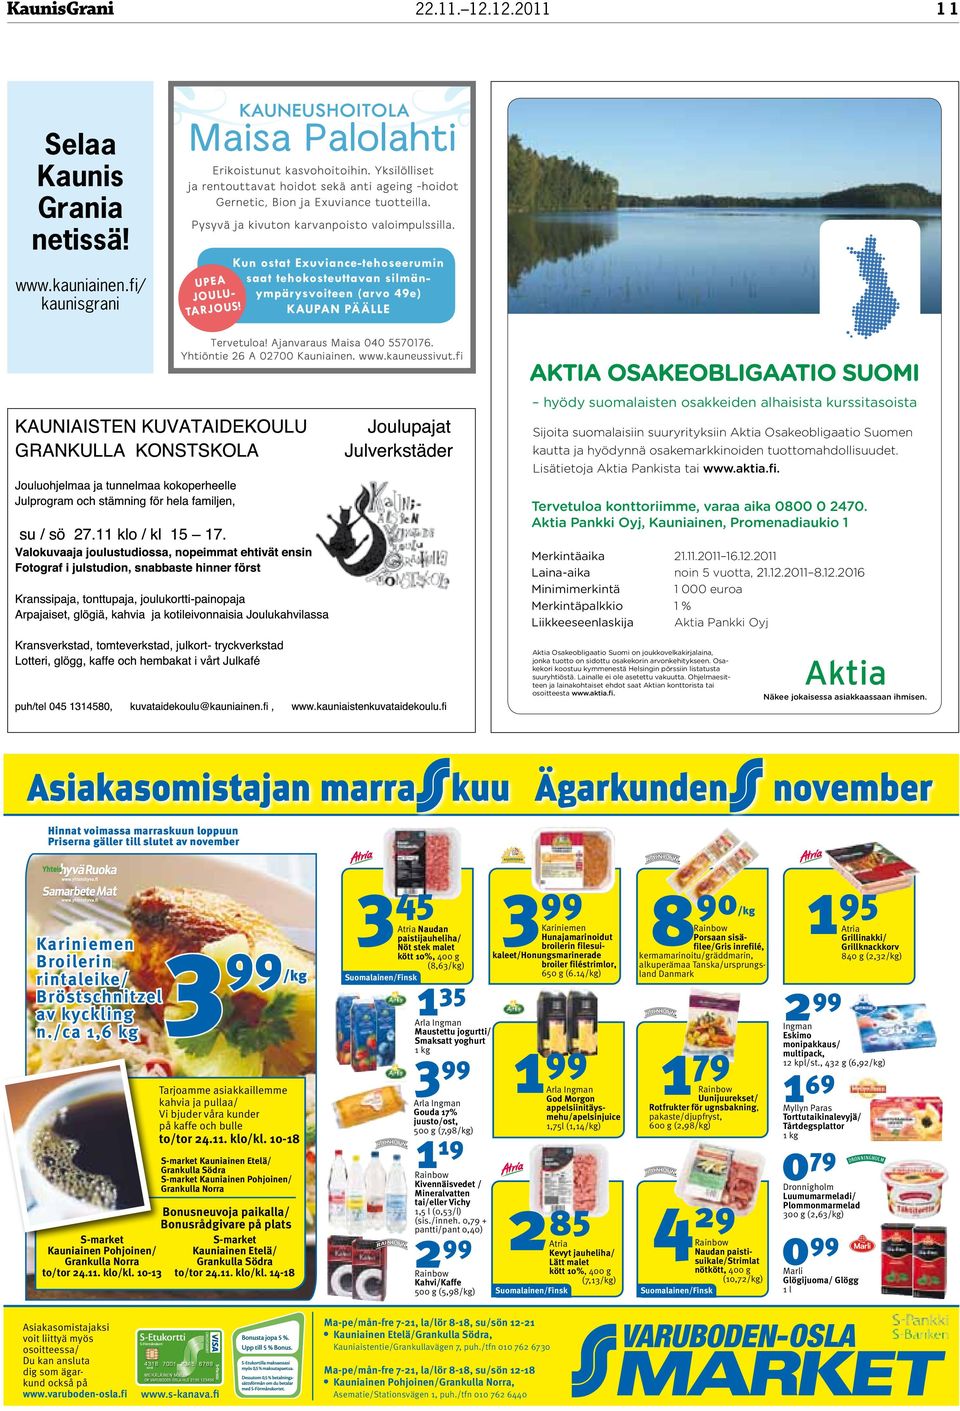 osakemarkkinoiden tuottomahdollisuudet. Lisätietoja Aktia Pankista tai www.aktia.fi. Tervetuloa konttoriimme, varaa aika 0800 0 2470.